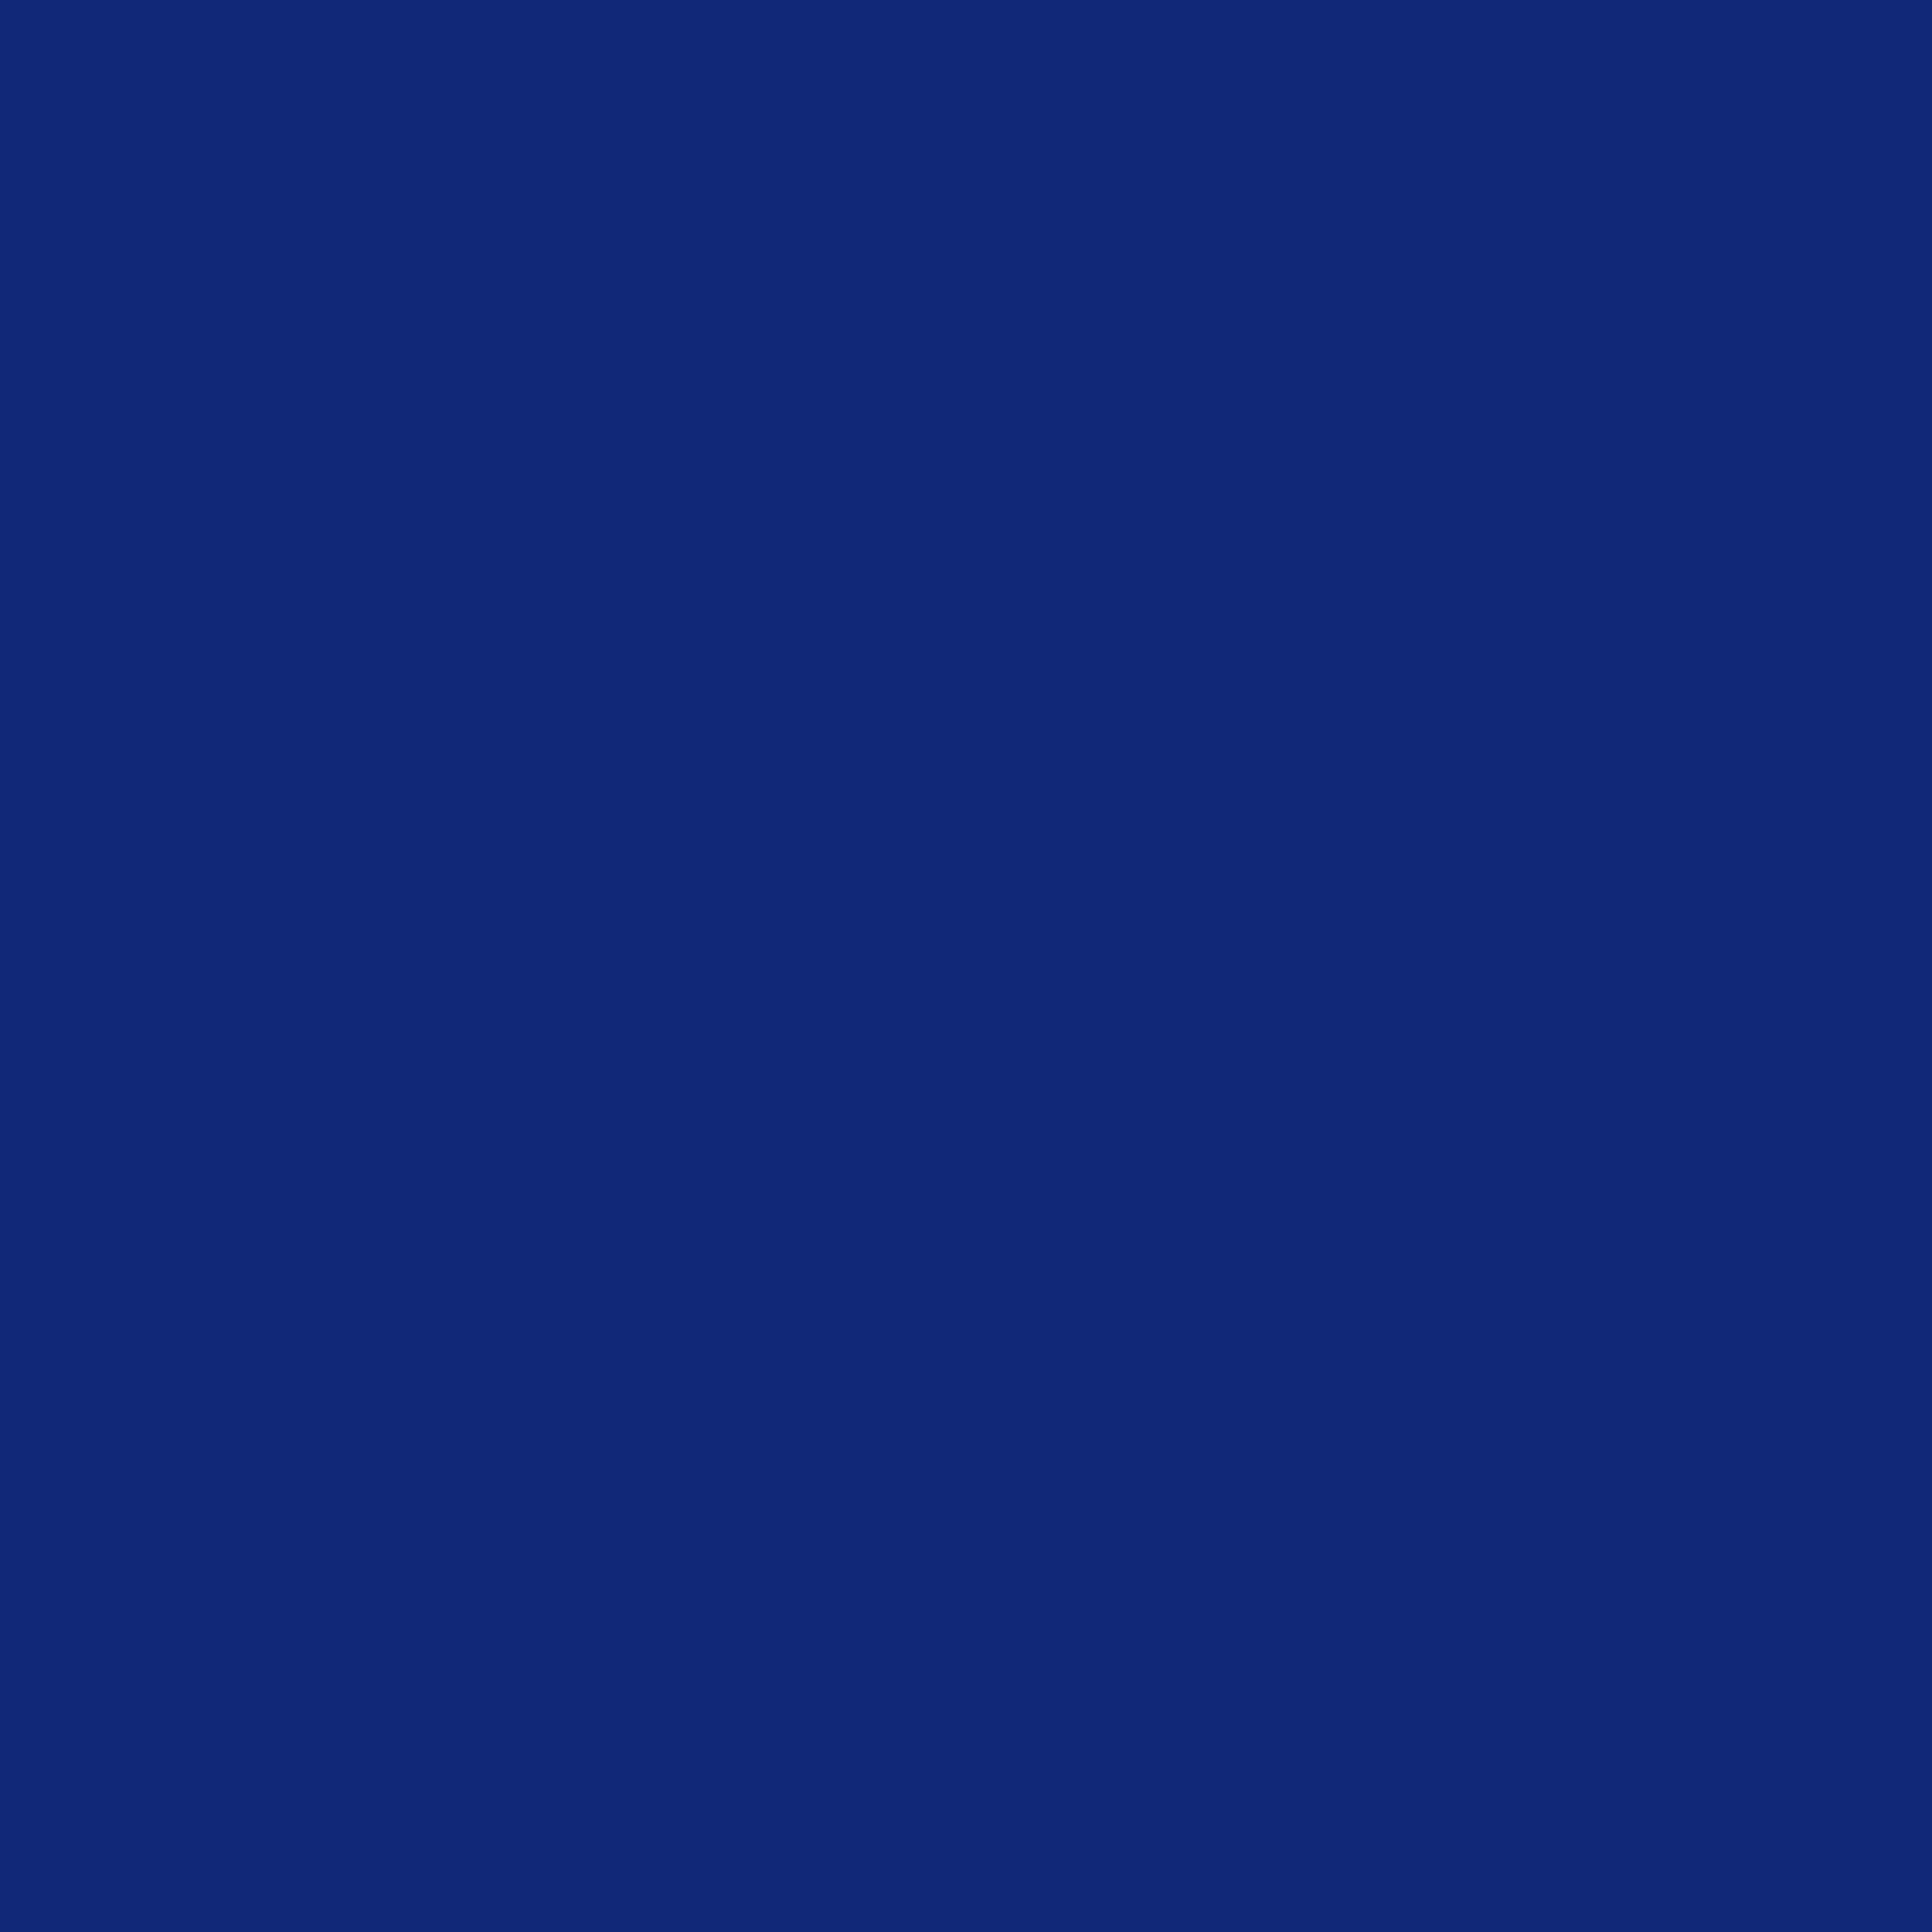 Vinylfolie CRICUT Smart SVP 2008622 1 SHEET Blue BLUE